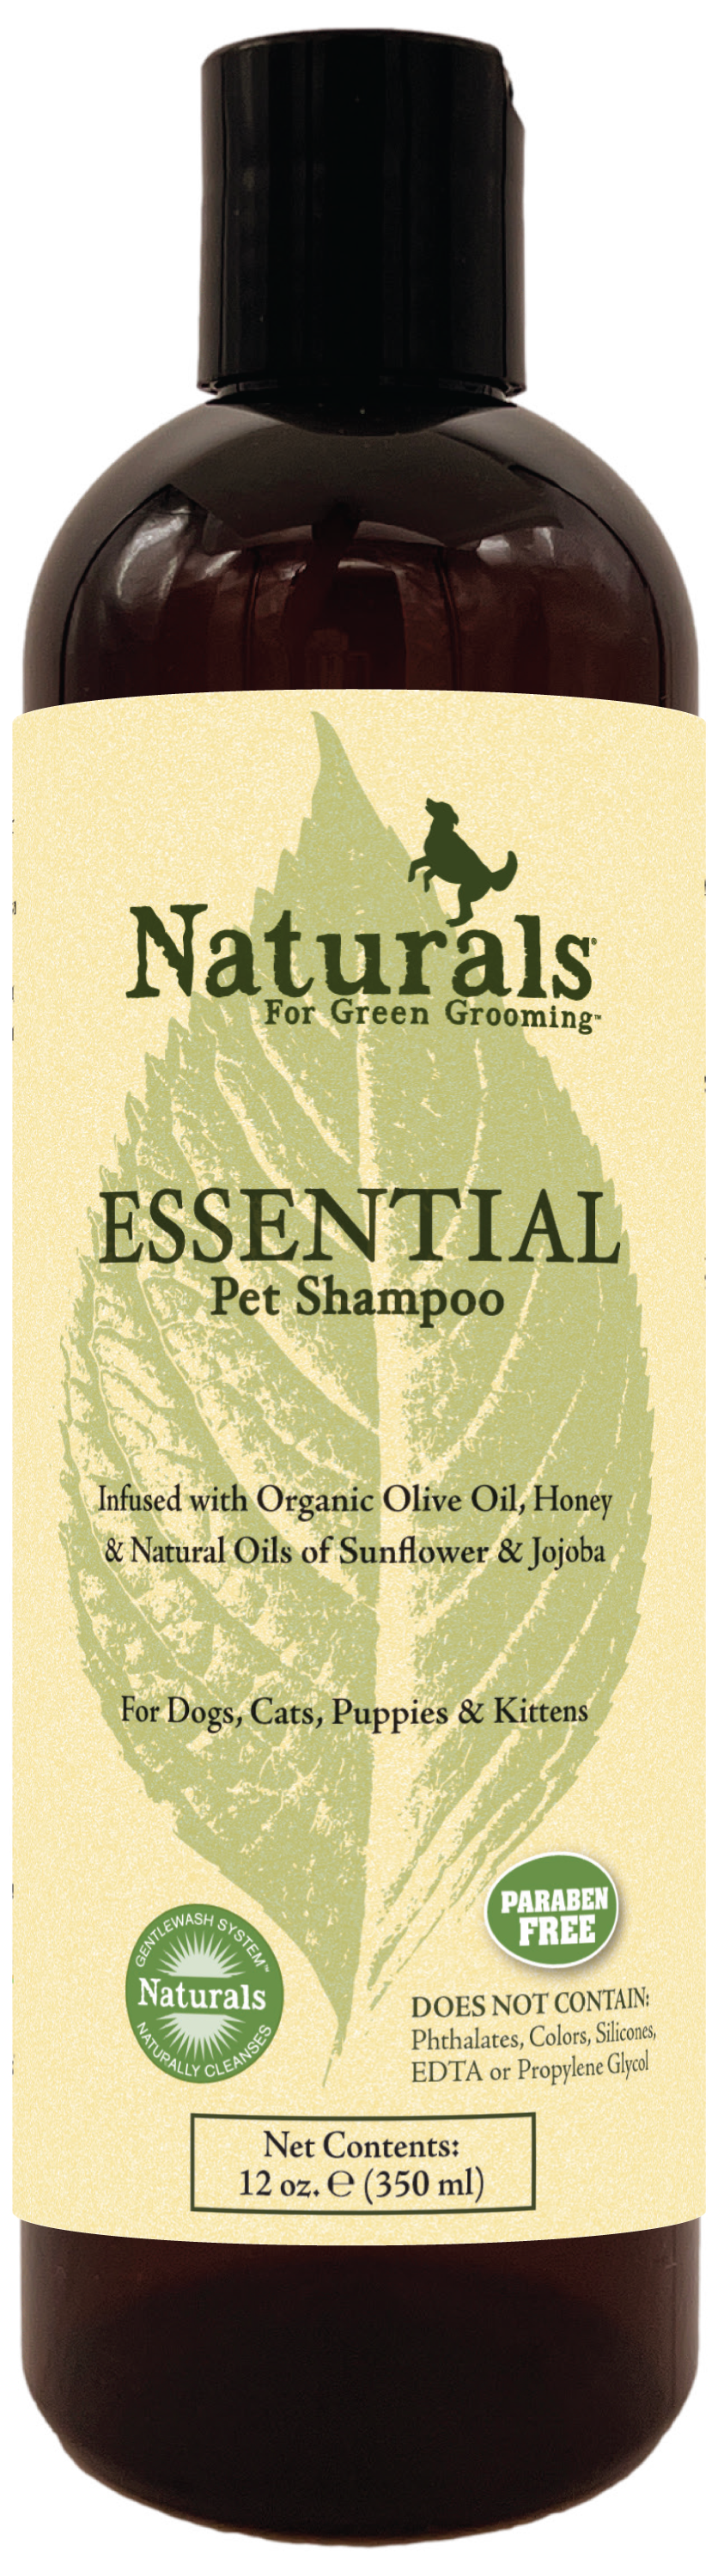 Essential Shampoo